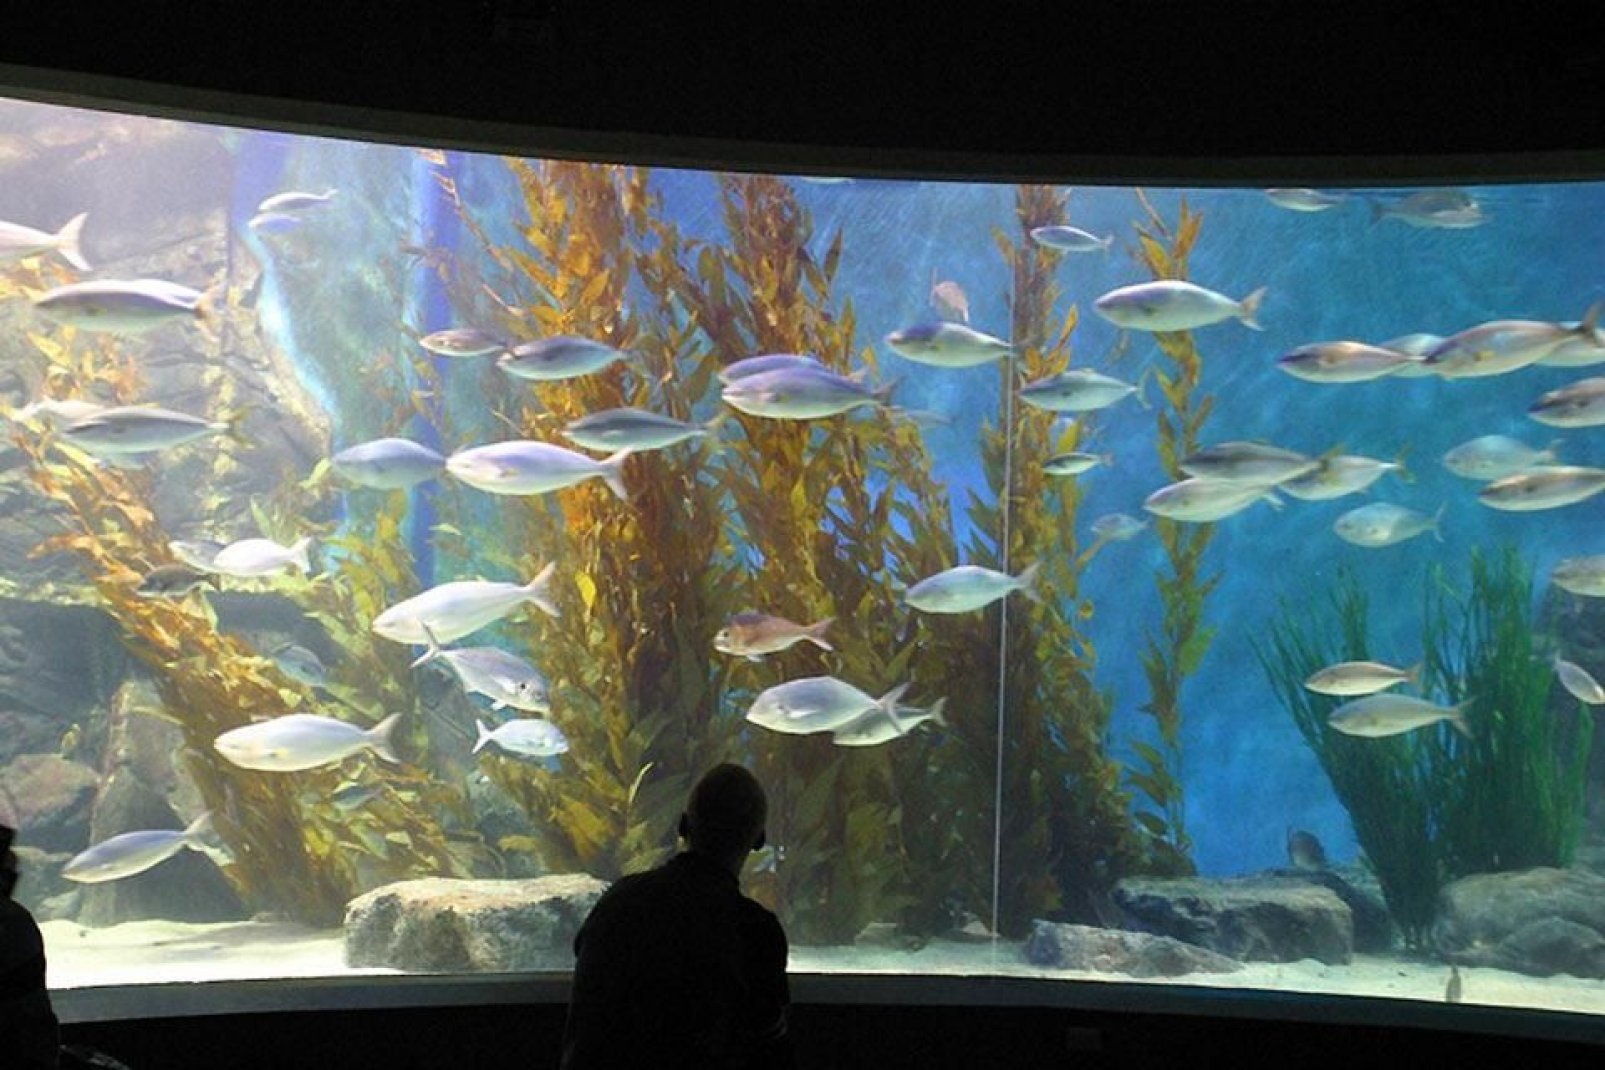 This public aquarium is located at the centre of Melbourne.